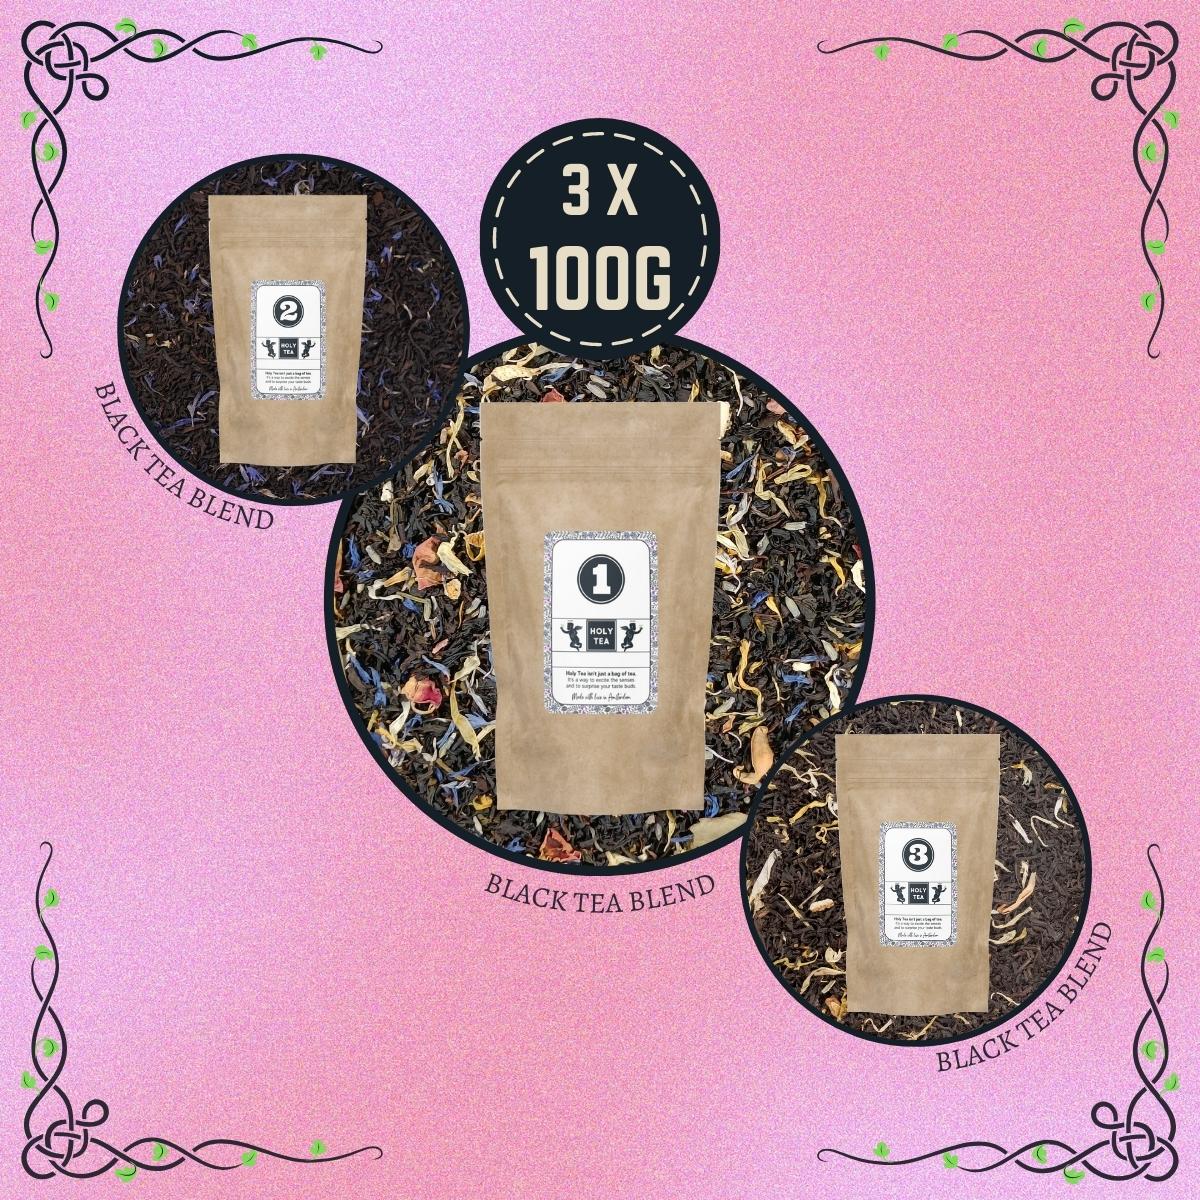 Premium Loose-Leaf Black Tea Box - Holy Tea Amsterdam - 3 x 100g